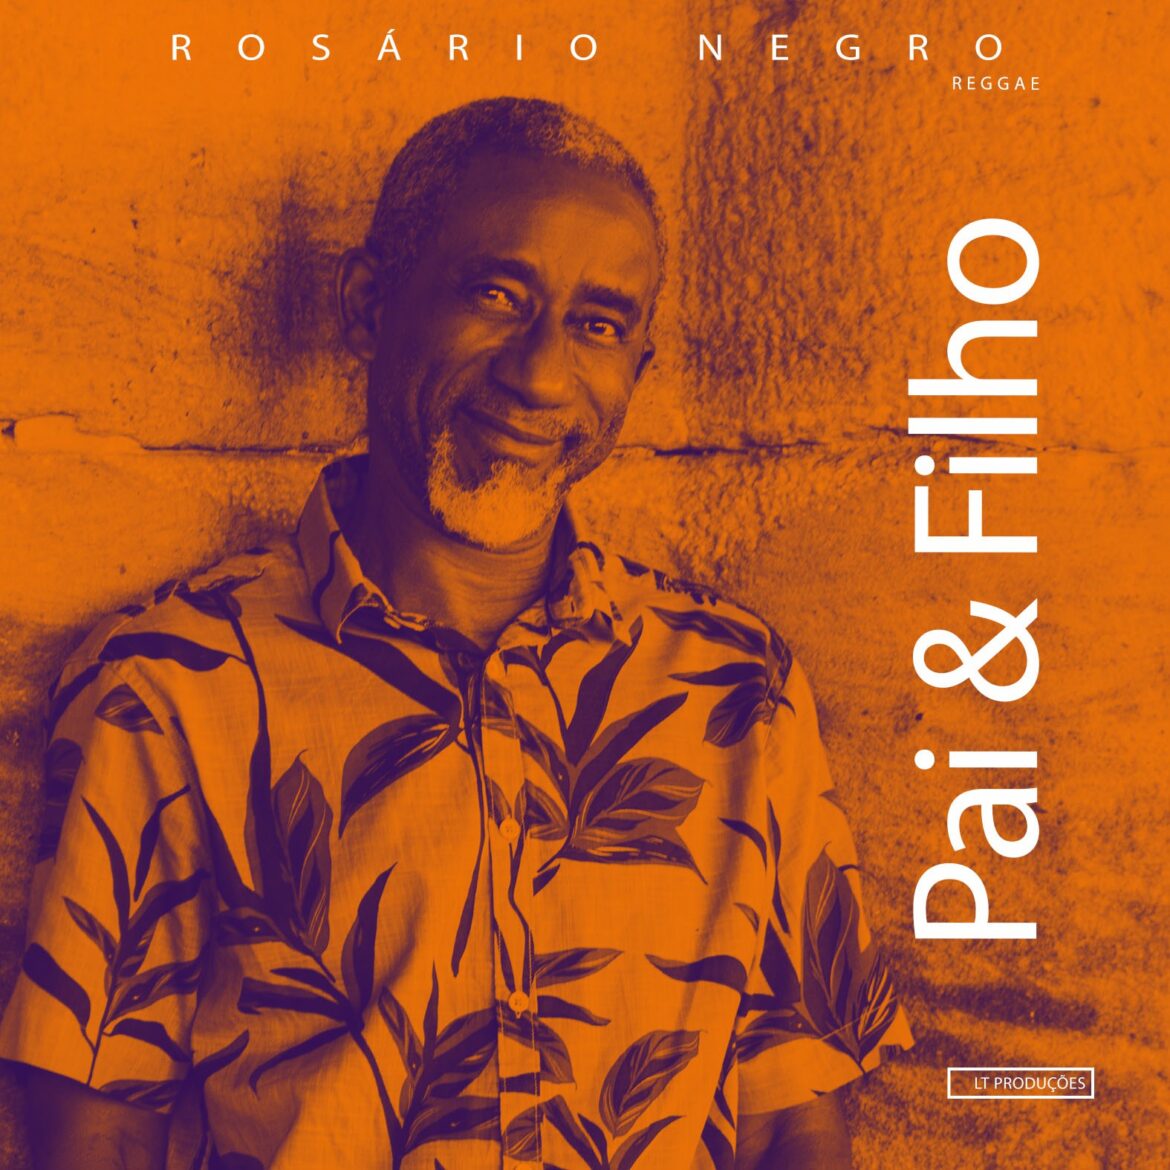 Rosário Negro e seu reggae em mais um single autoral – “Pai e Filho”